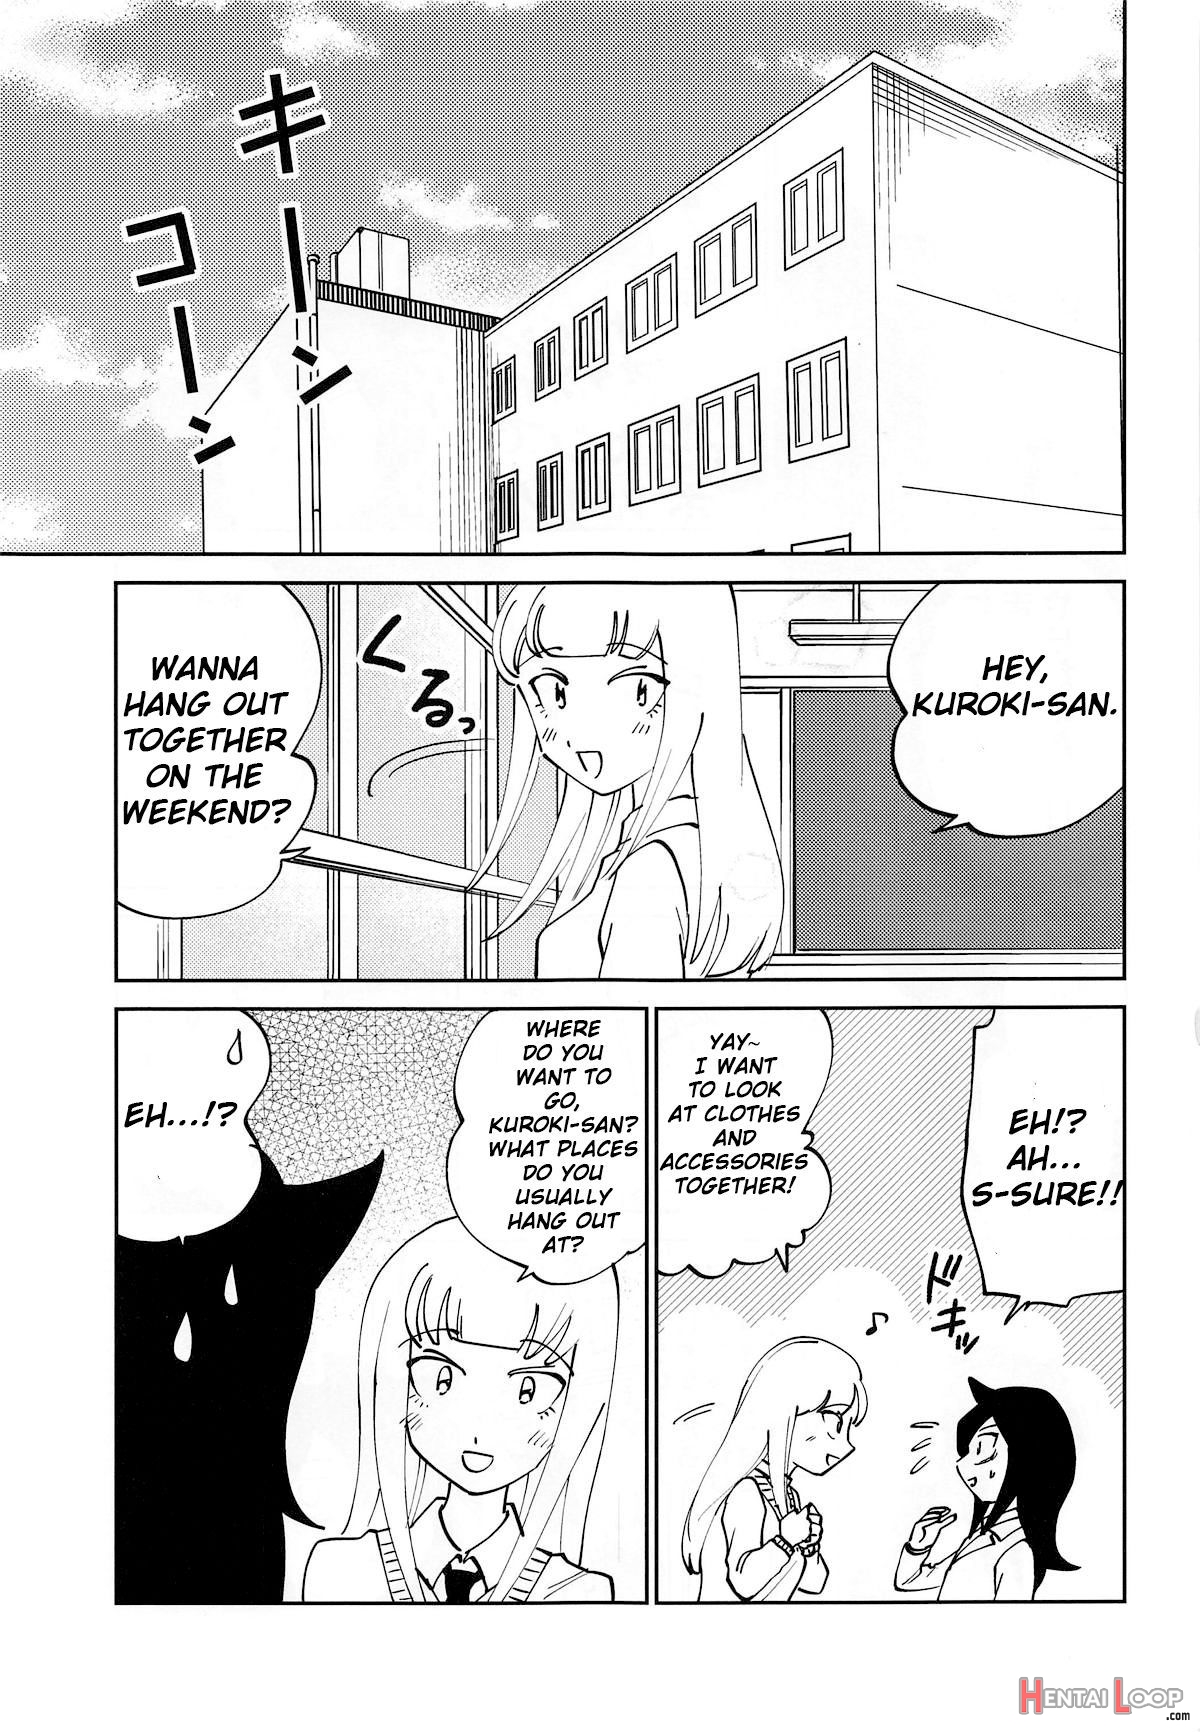 Kuroki-san, Anone. page 2